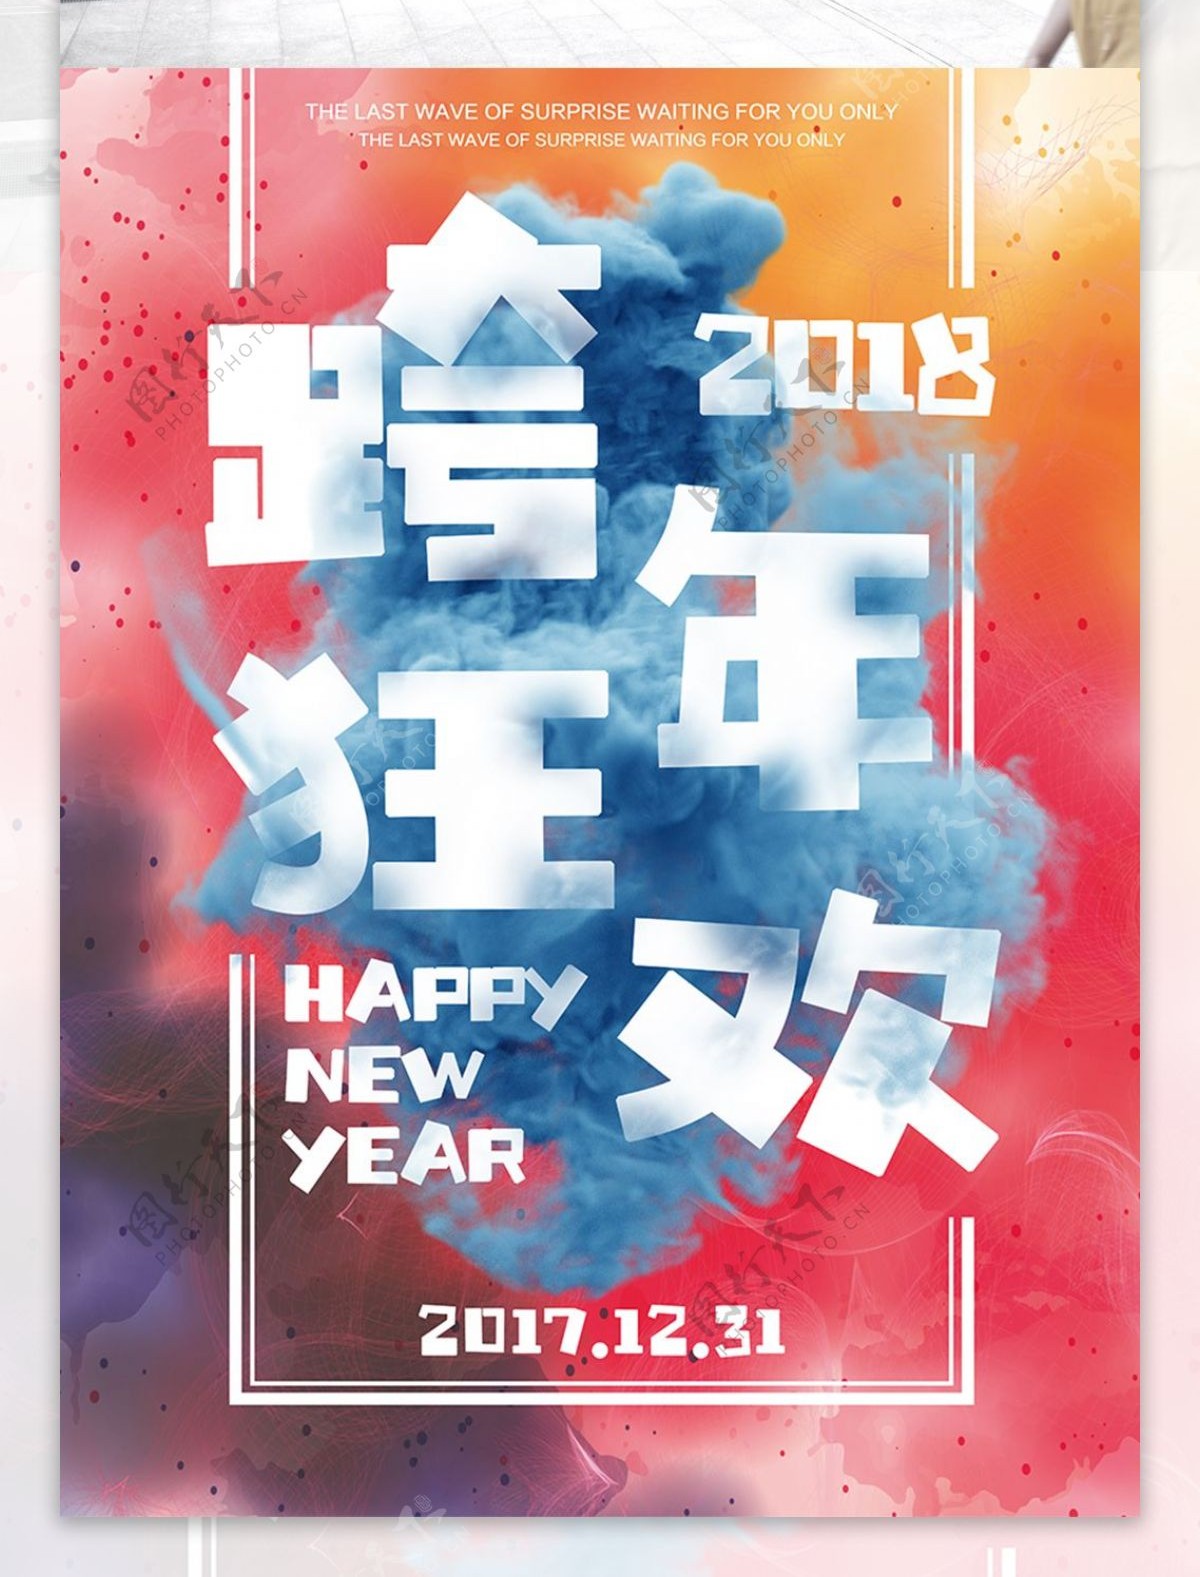 2018跨年狂欢夜宣传海报设计模板